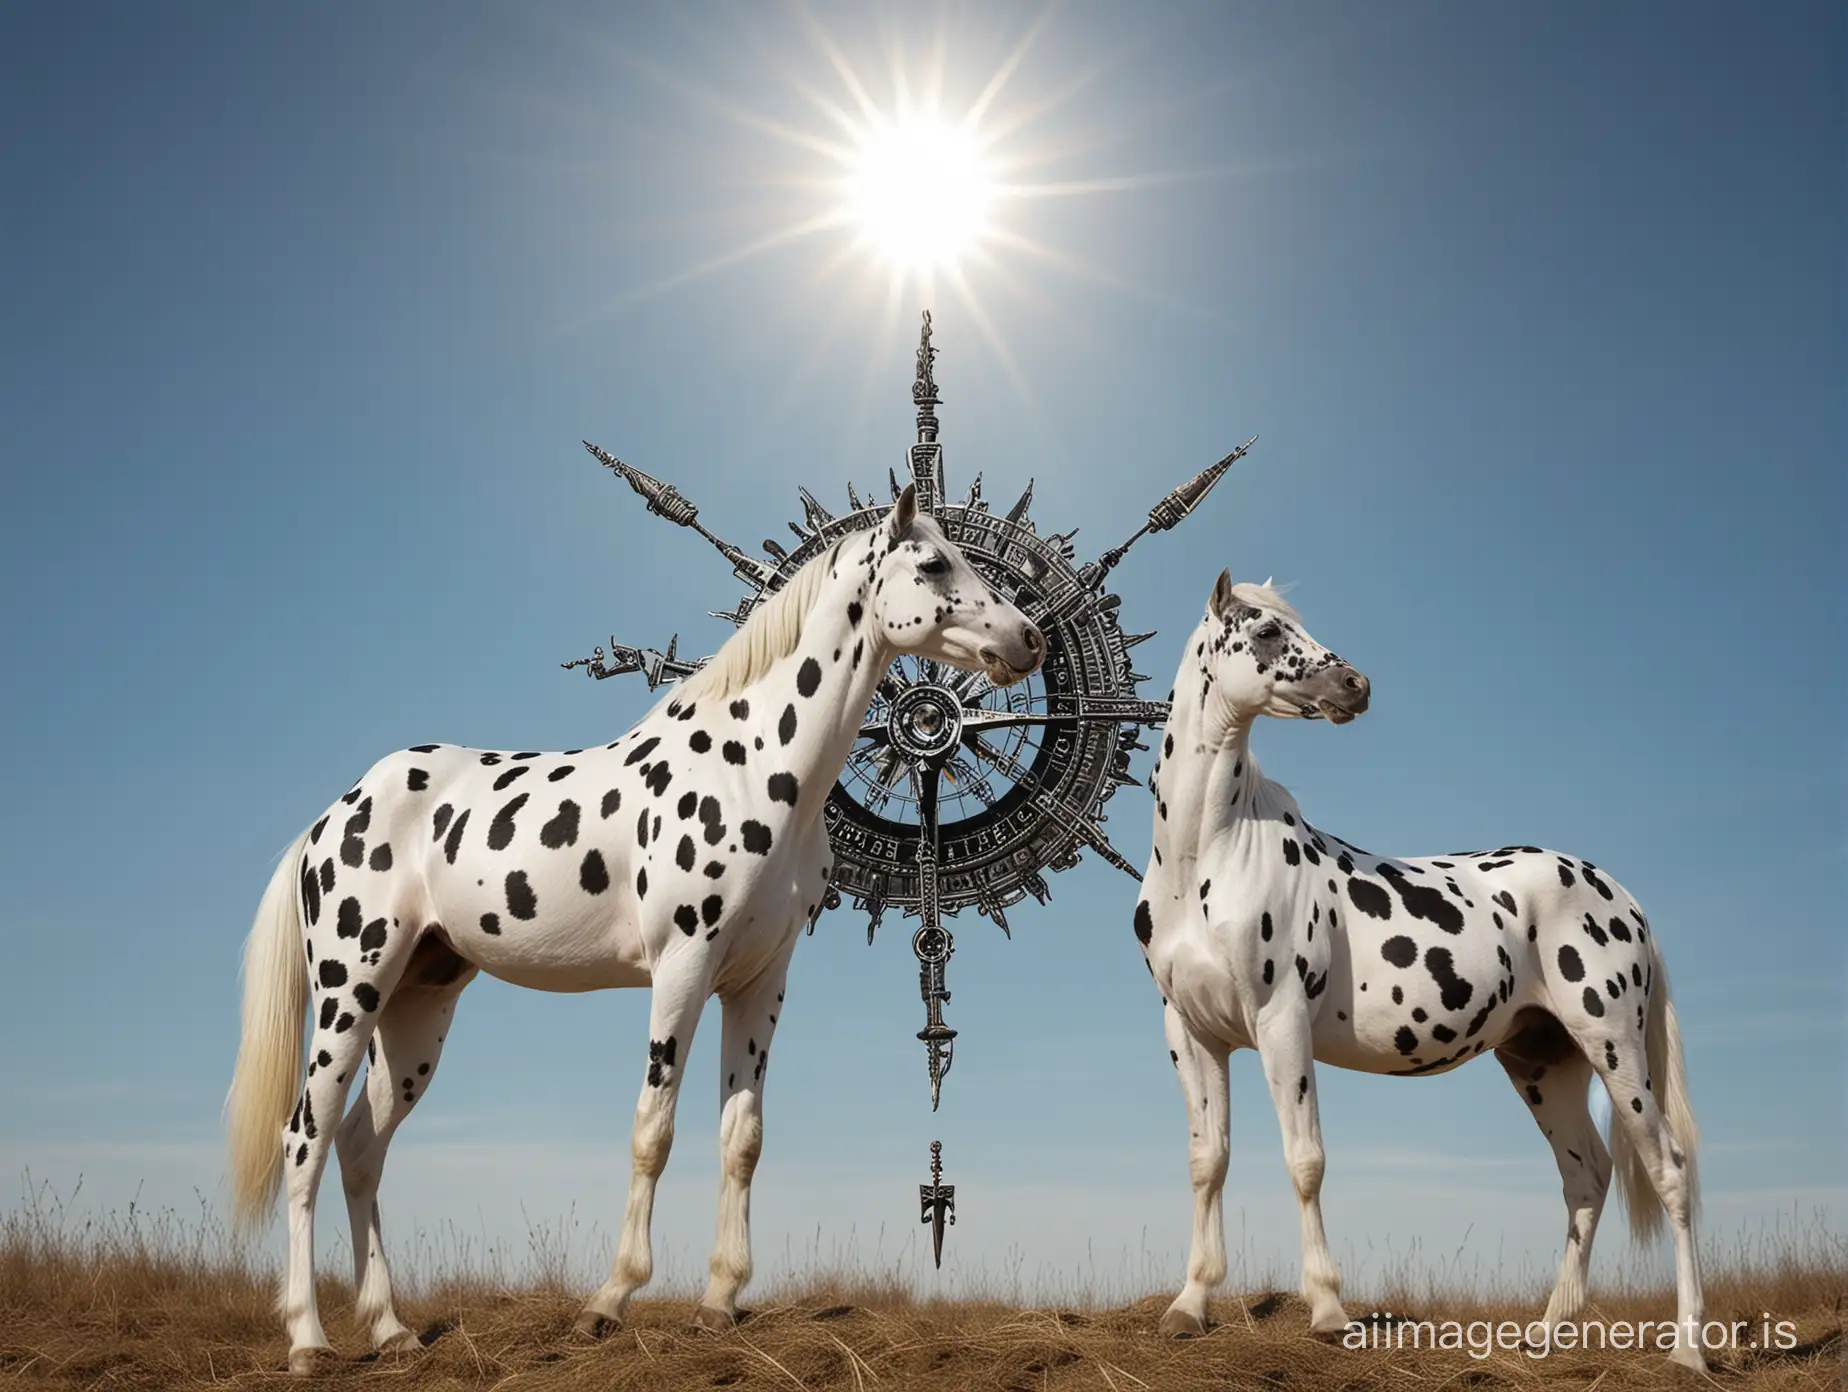 dalmatian knabstrupper horses compass sun blue sky